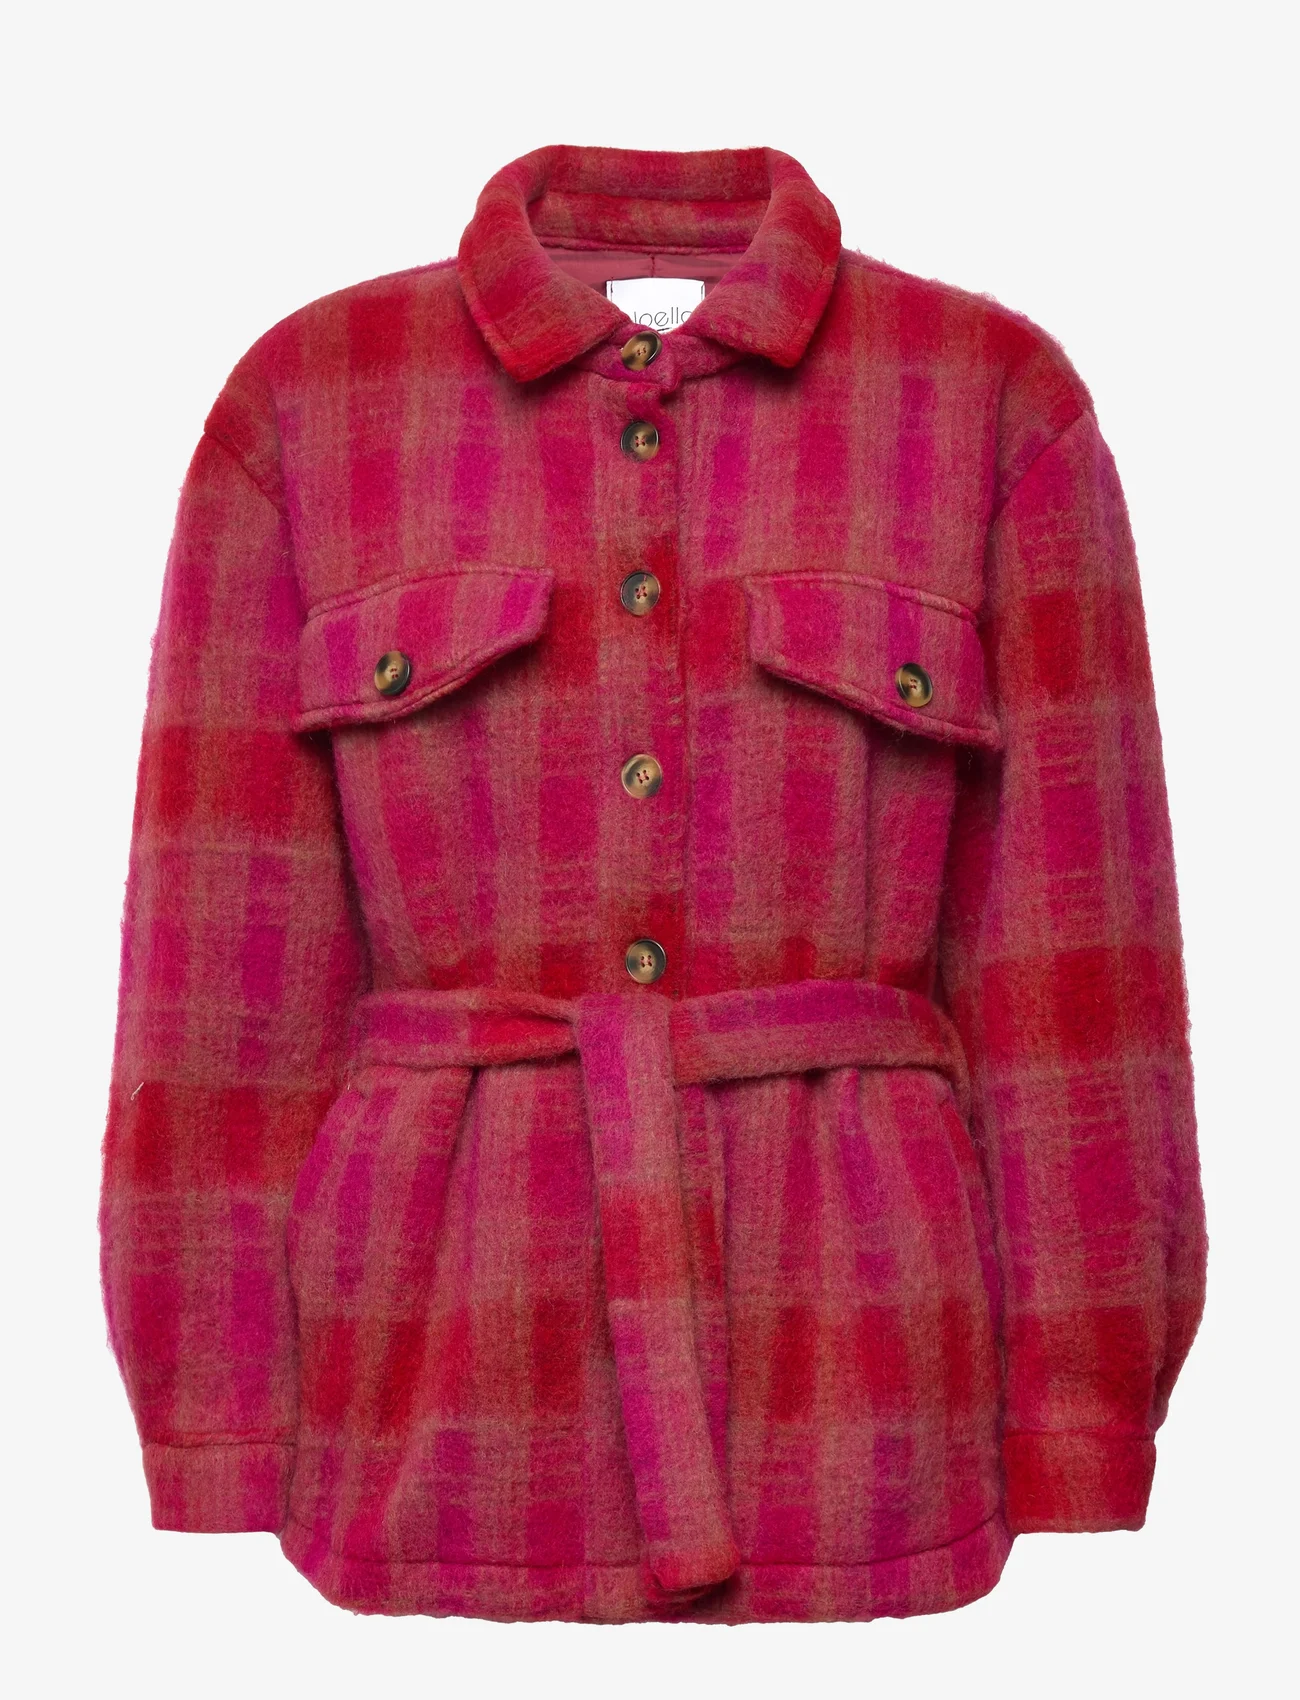 Noella - Koi Shirt Jacket - wool jackets - pink/red checks - 0